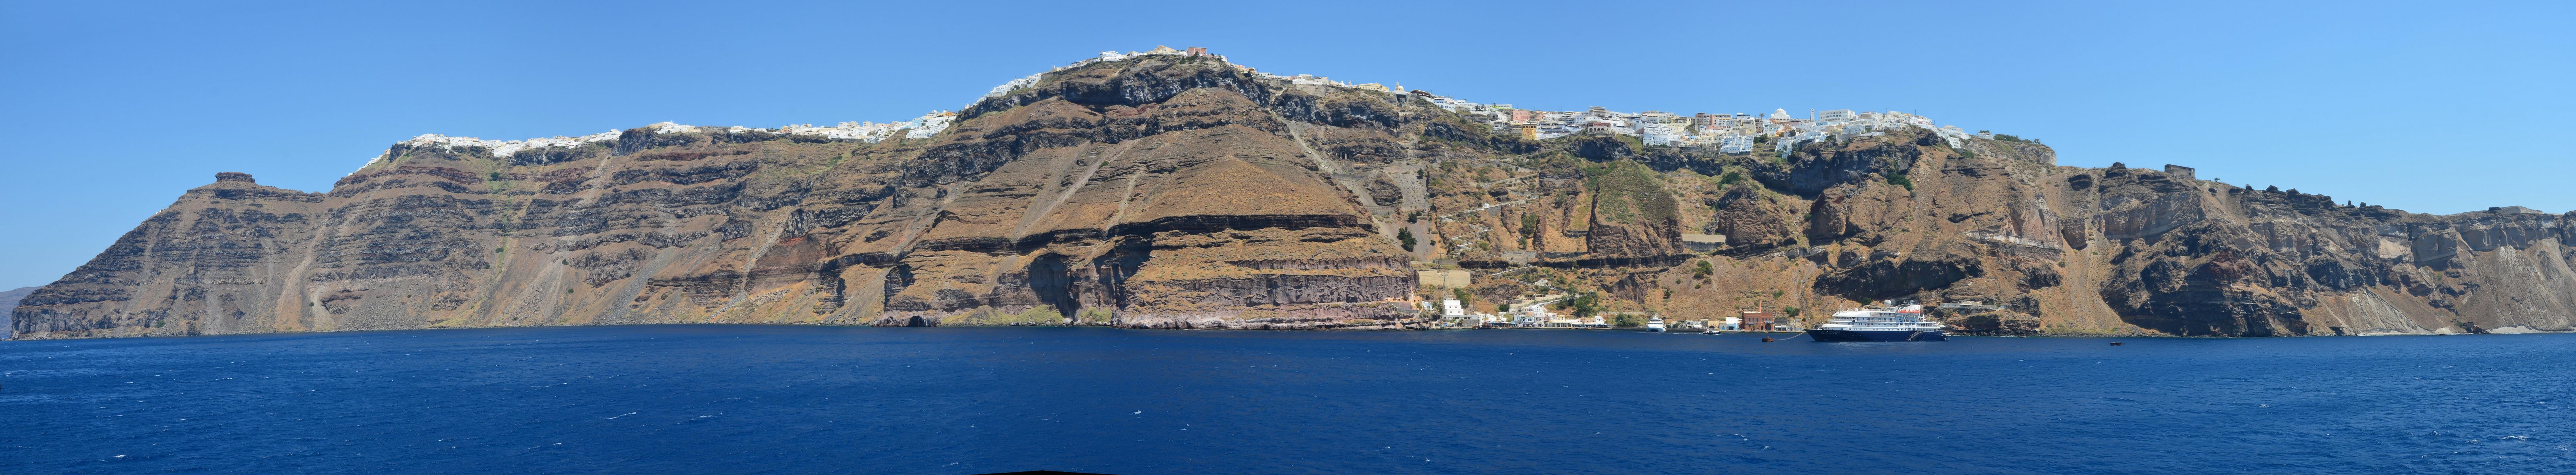 Santorini Island - Greece4.jpg